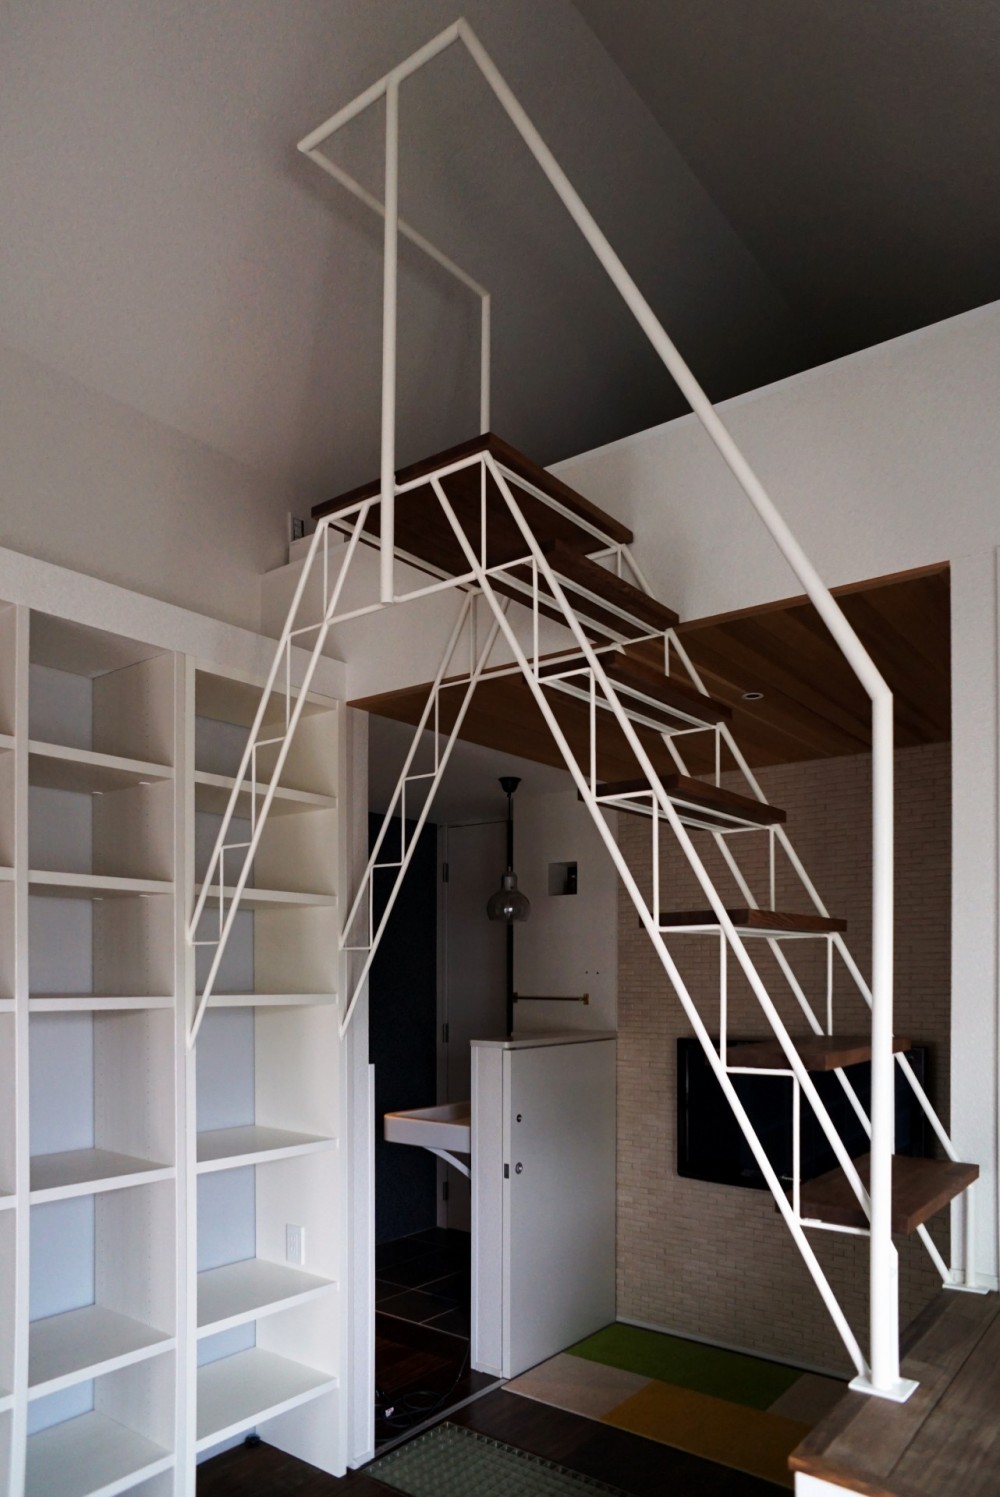 ロフトへのトラス階段をつくる計画 (ロフト階段)